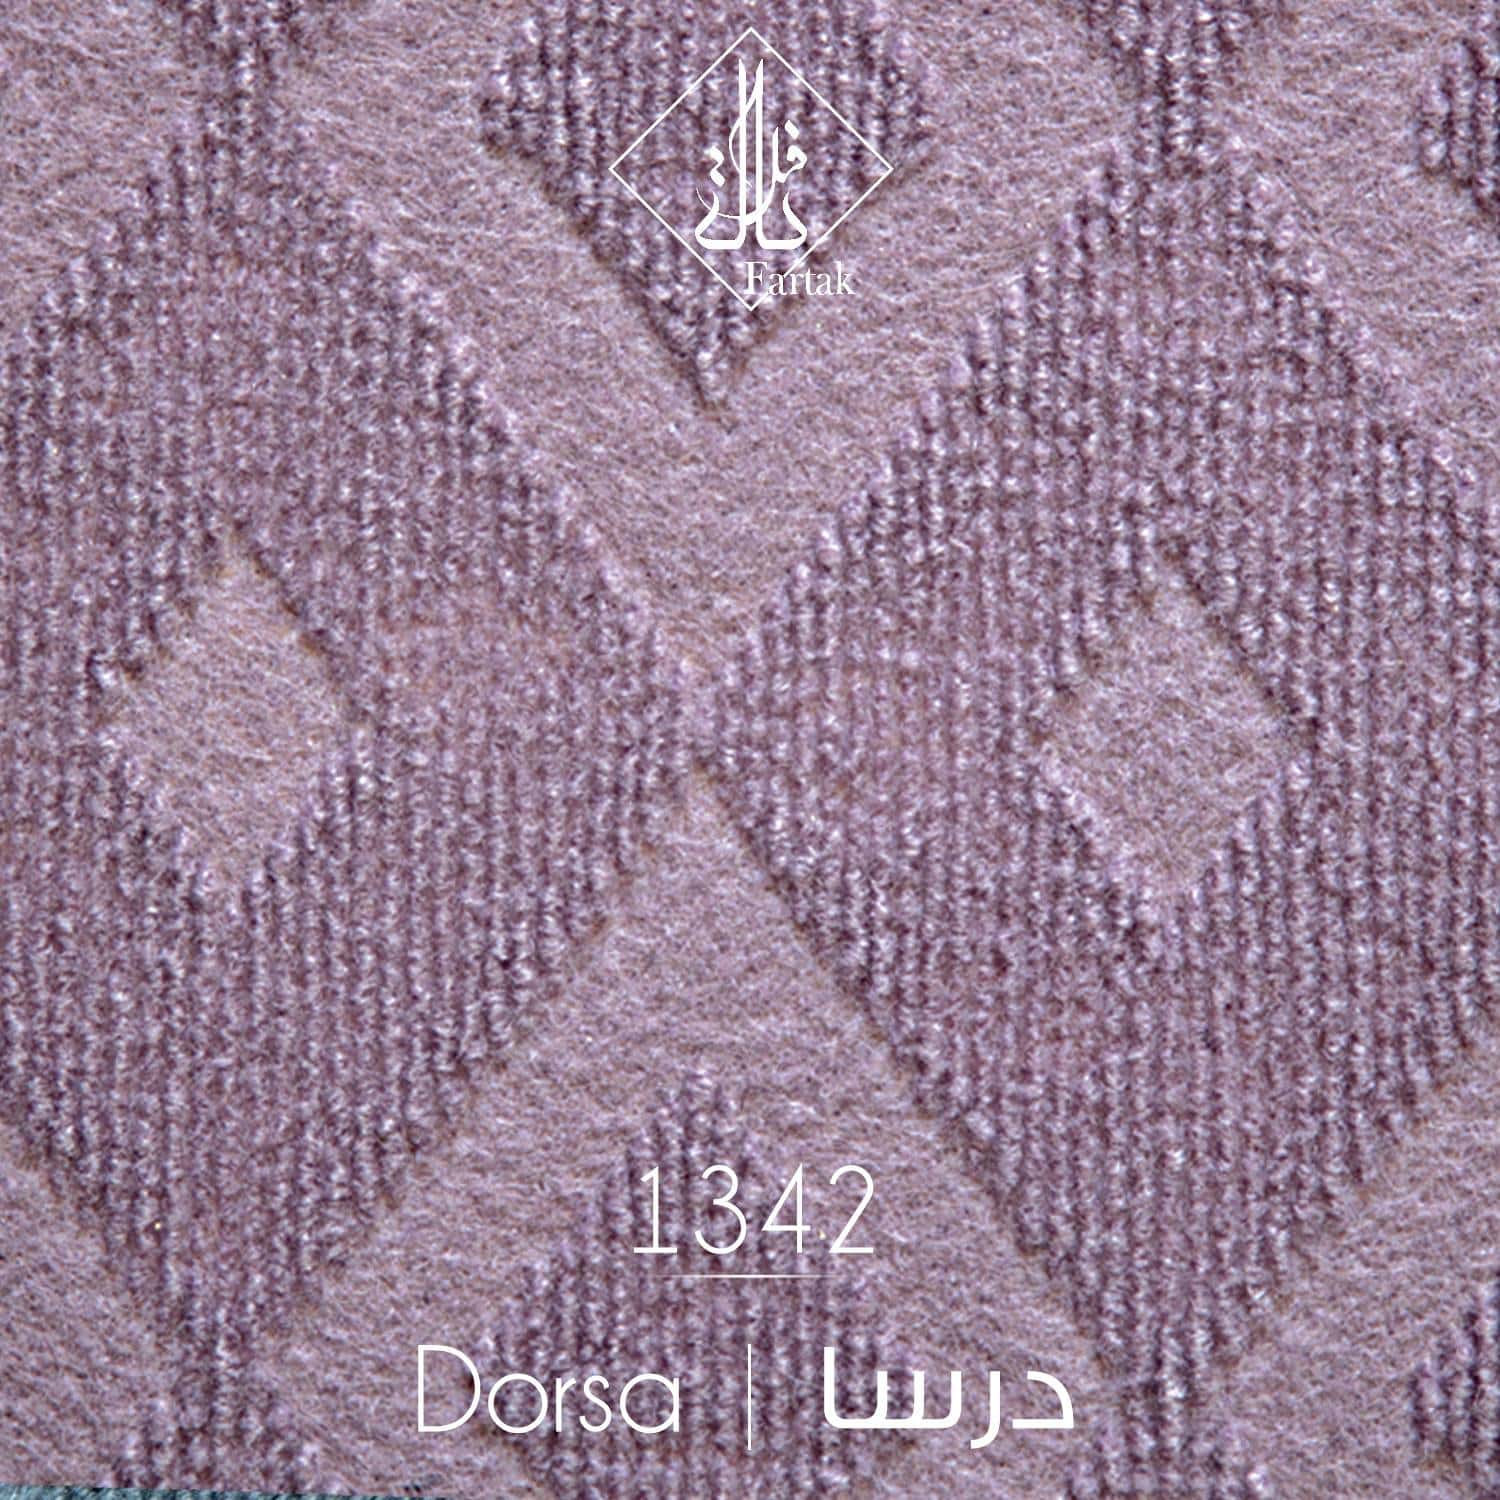 موکت ظریف مصور طرح درسا کد 1342